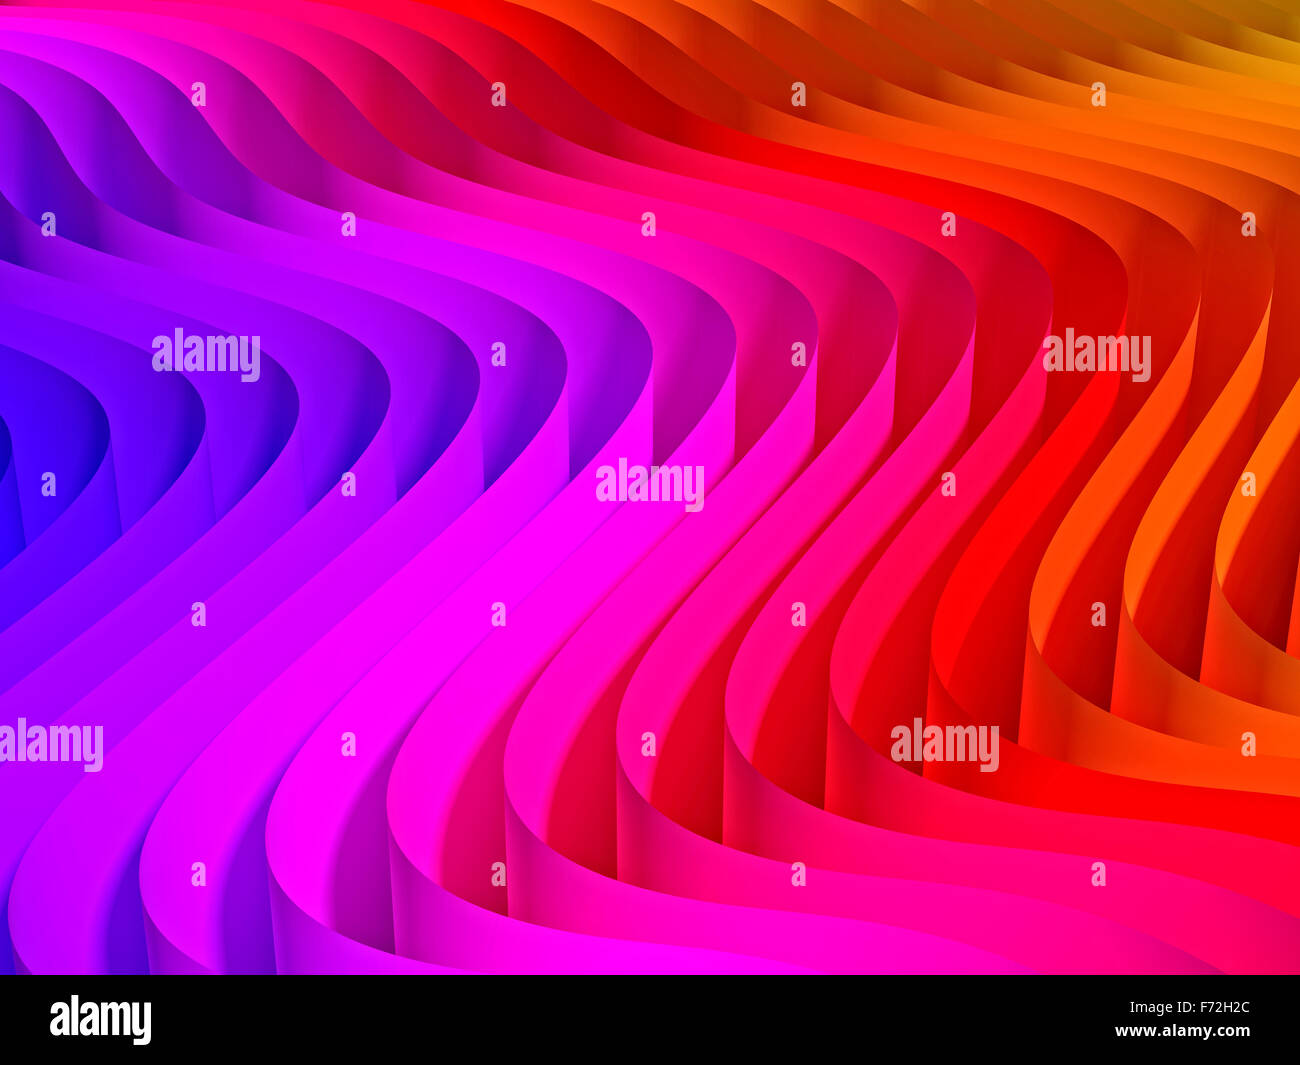 Saludó los colores de fondo de color ilustración 3D Render concepto abstracto geométrico de forma de onda de gradiente de arco iris de escritorio Foto de stock